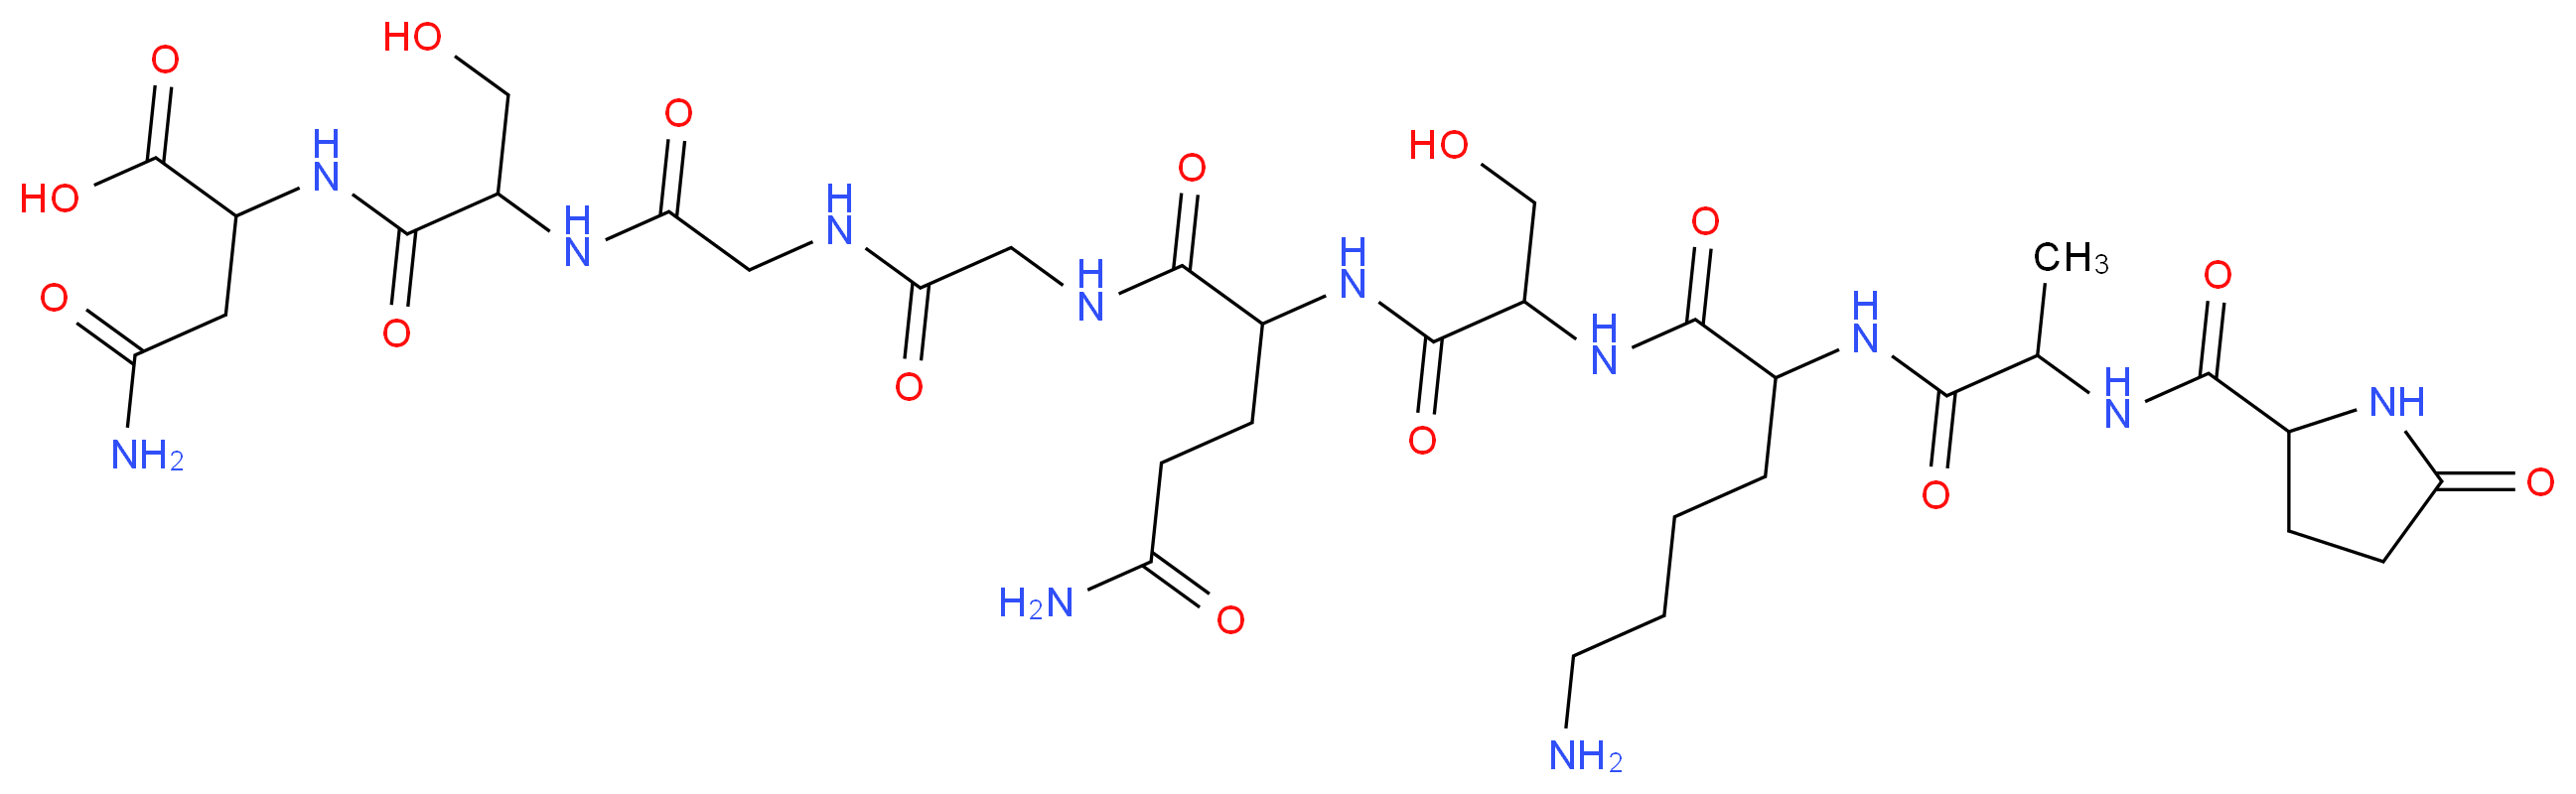 Thymulin_Molecular_structure_CAS_63958-90-7)